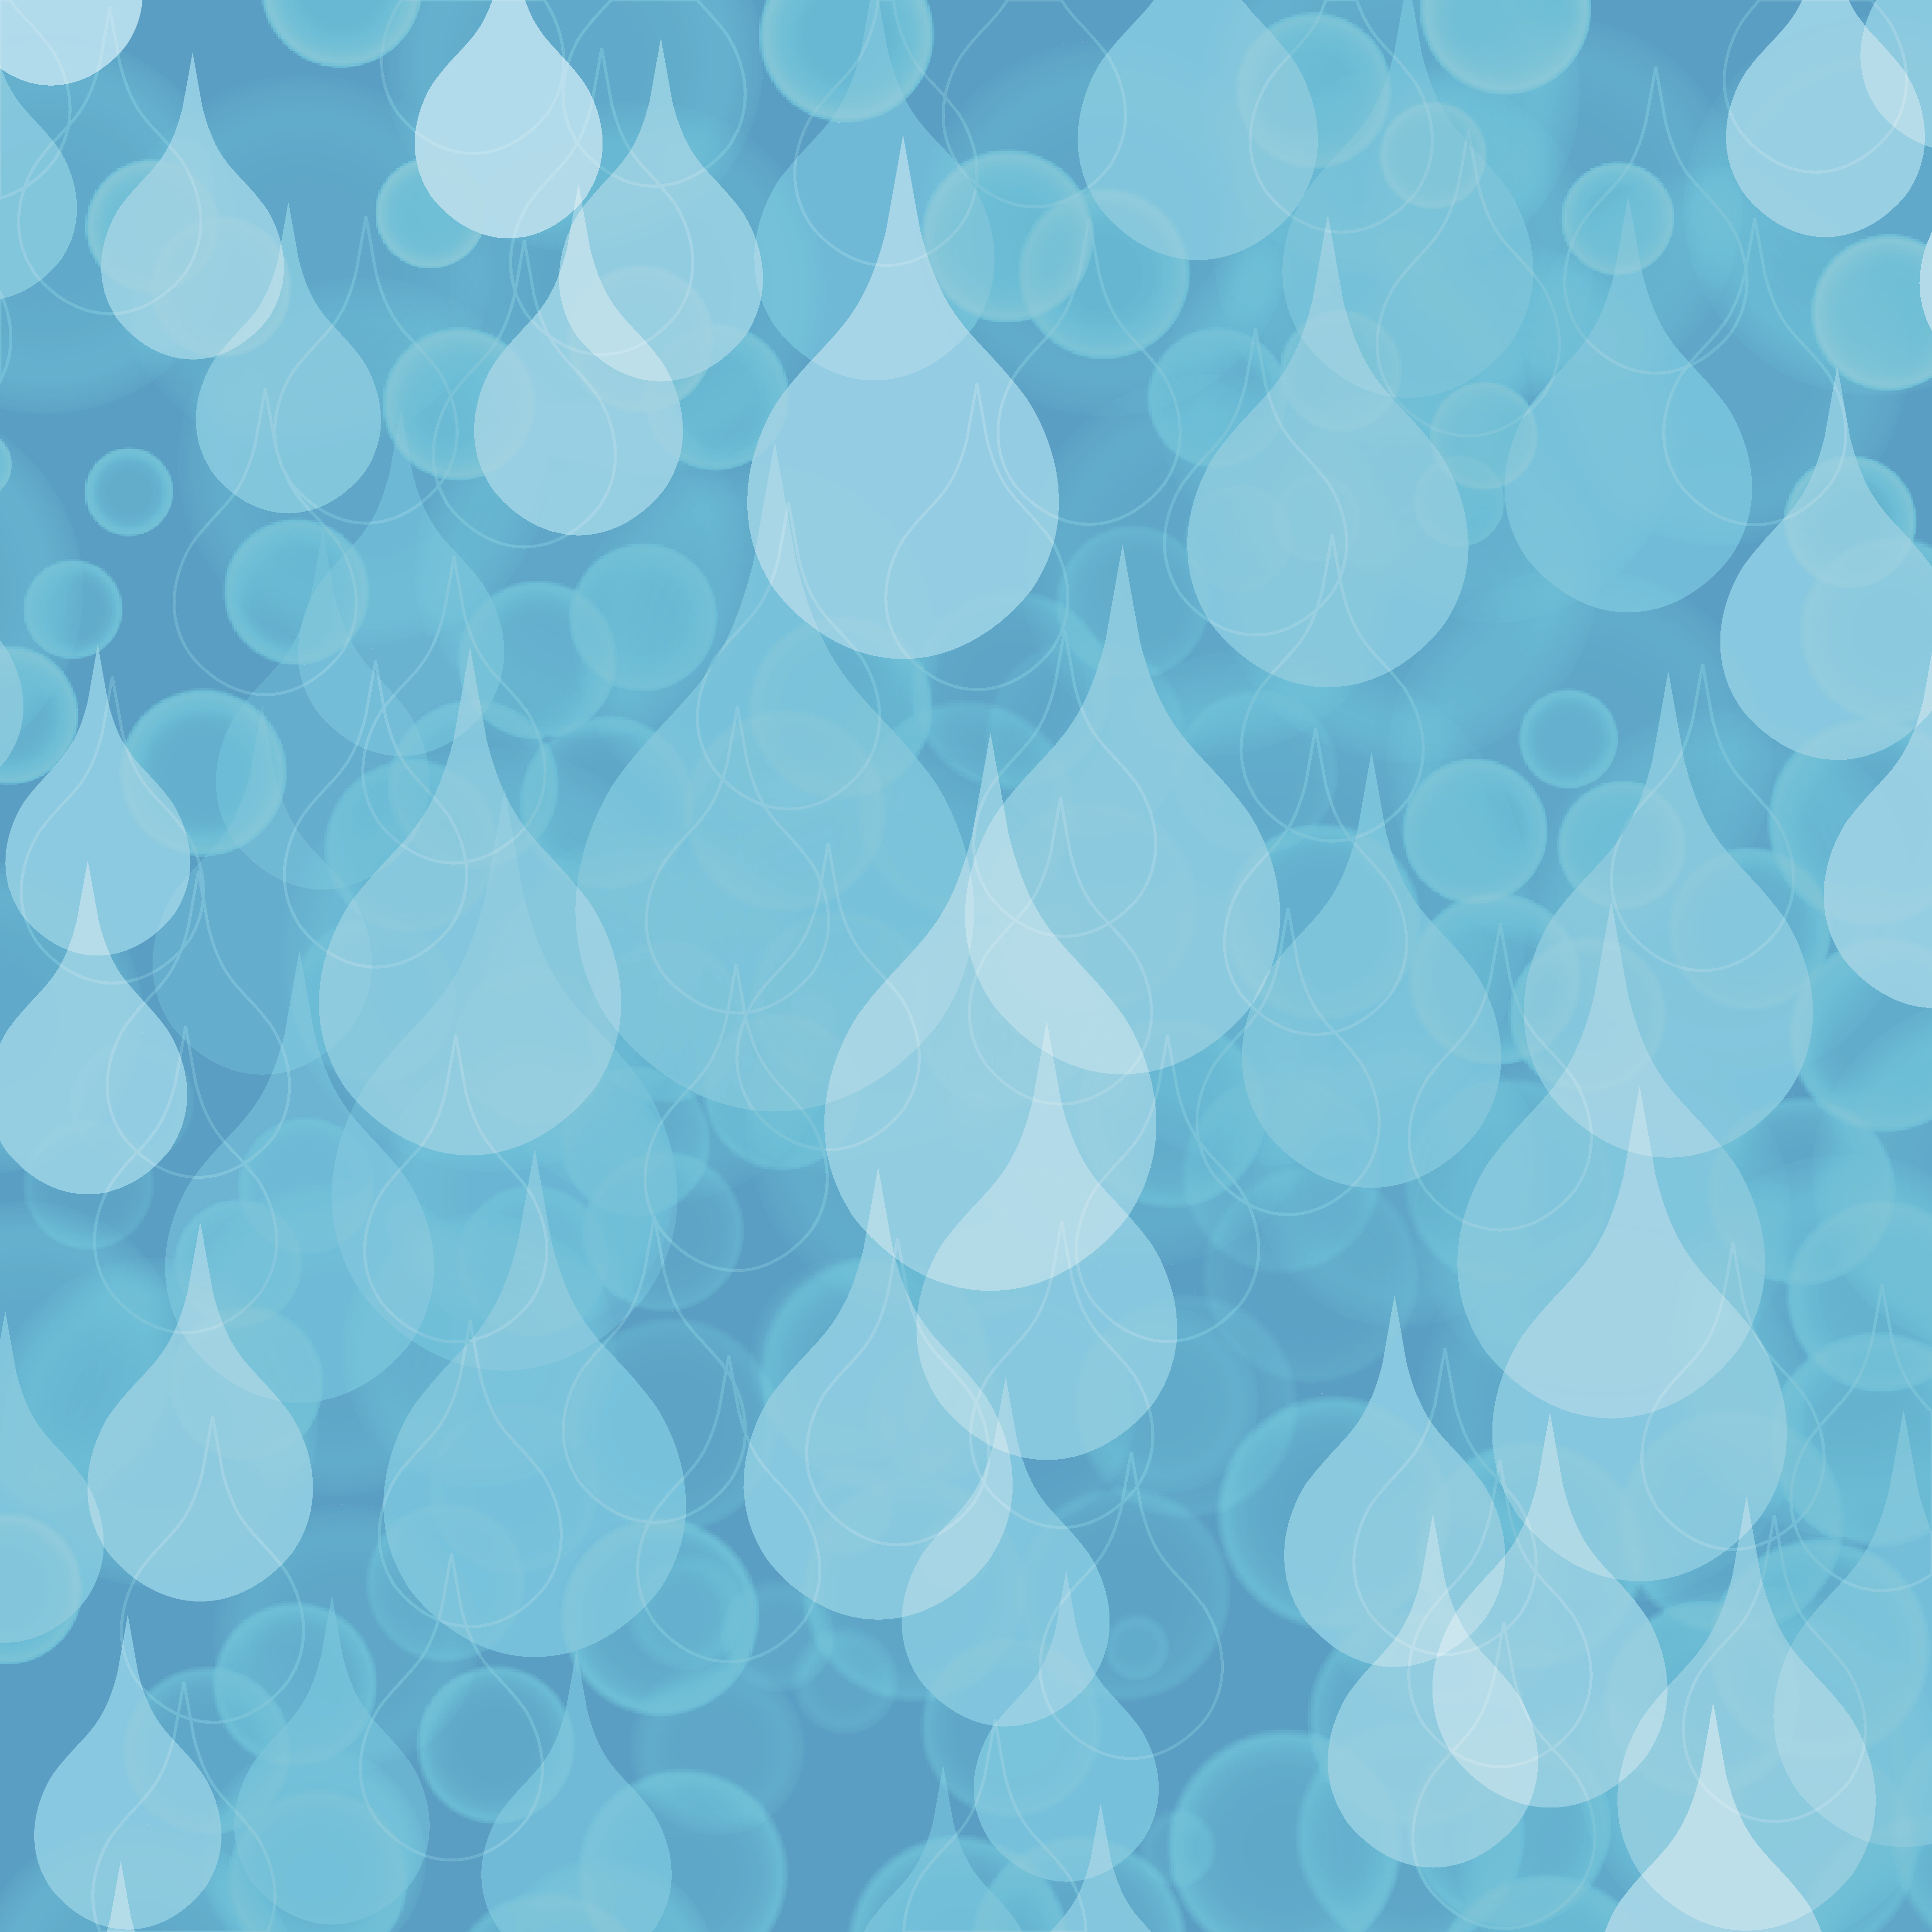 「未来の水ビジョン」懇話会7「都市の雨水管理と市民活動の未来」